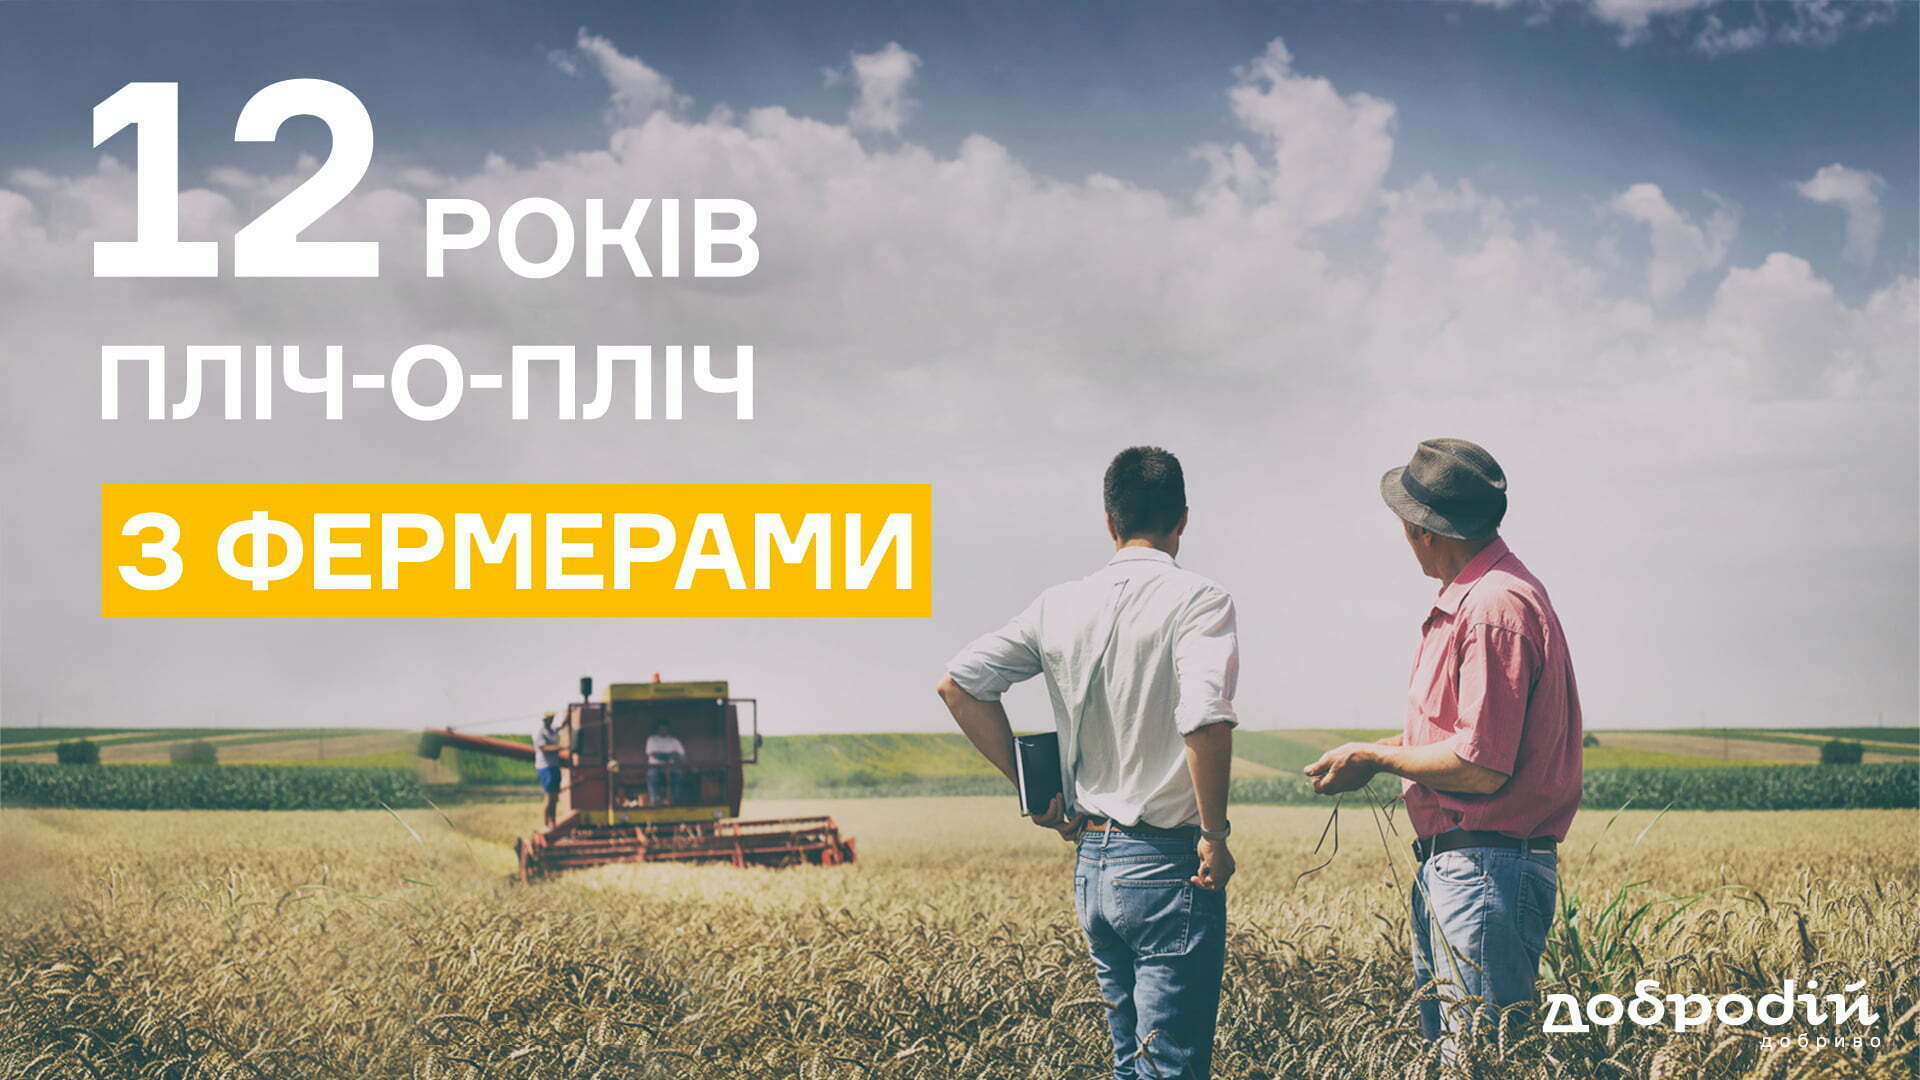 12 років на ринку України